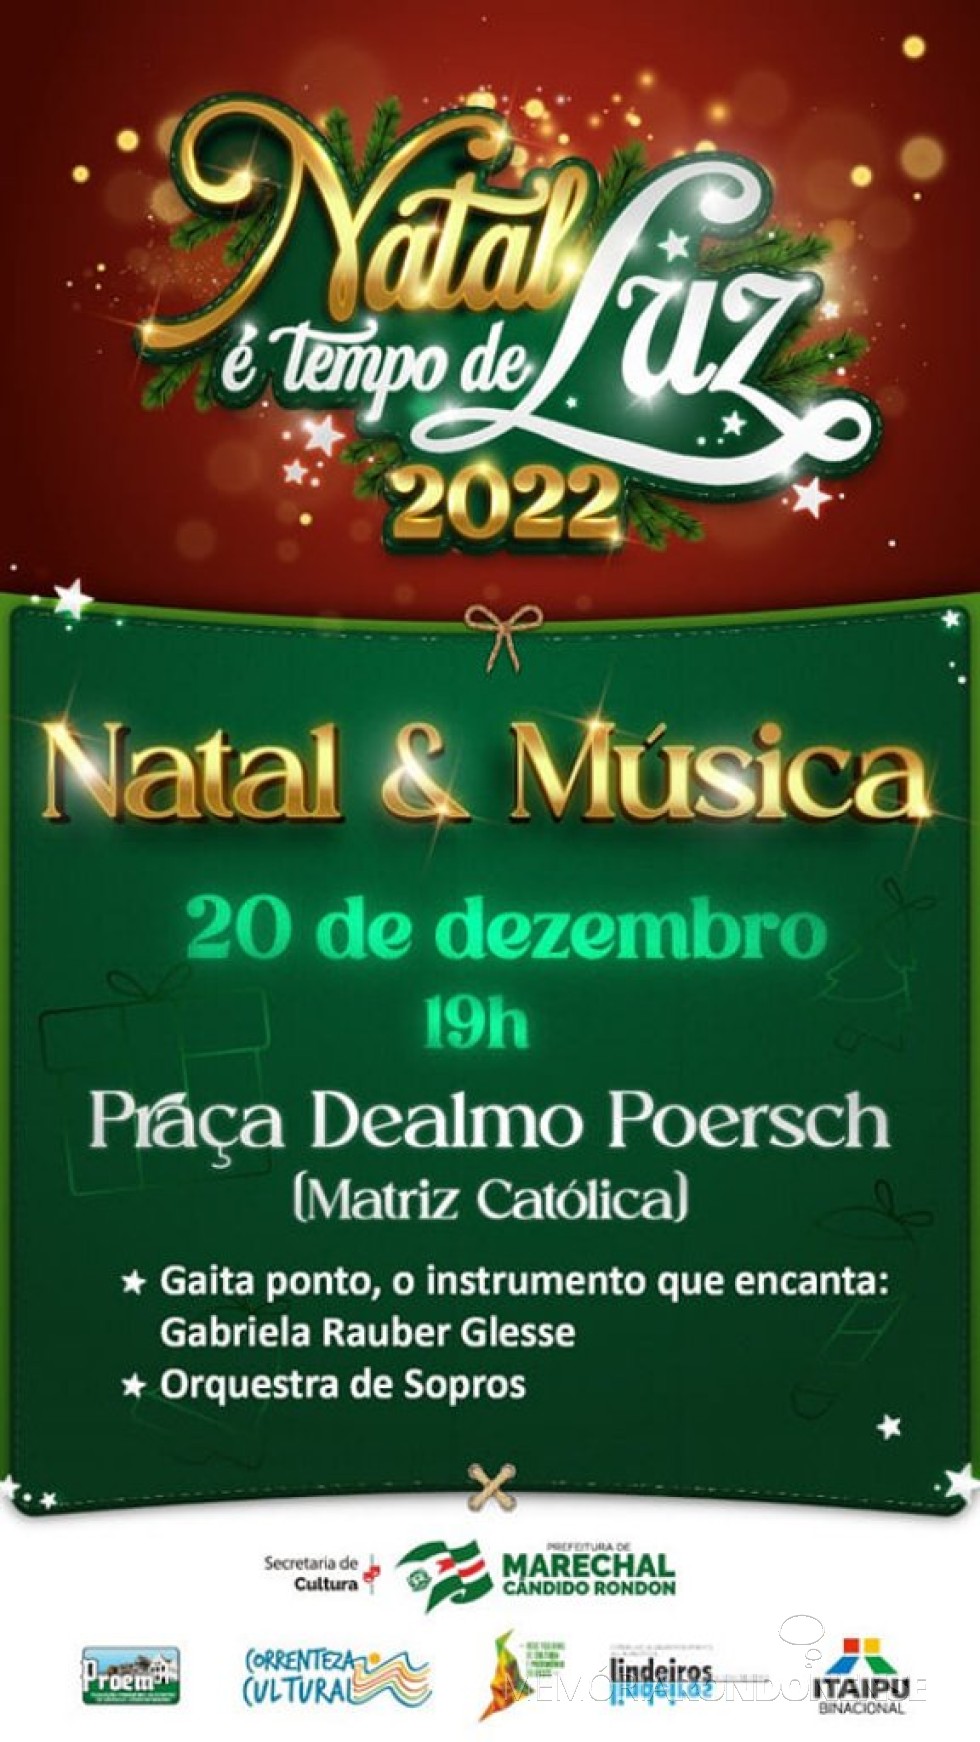 || Convite para a noite natalina de apresentação de artista de gaita ponto e orquestrada de sopros em Marechal Cândido Rondon, em 20 de dezembro de 2022.
Imagem: Acervo Projeto Memória Rondonense - FOTO 13 -